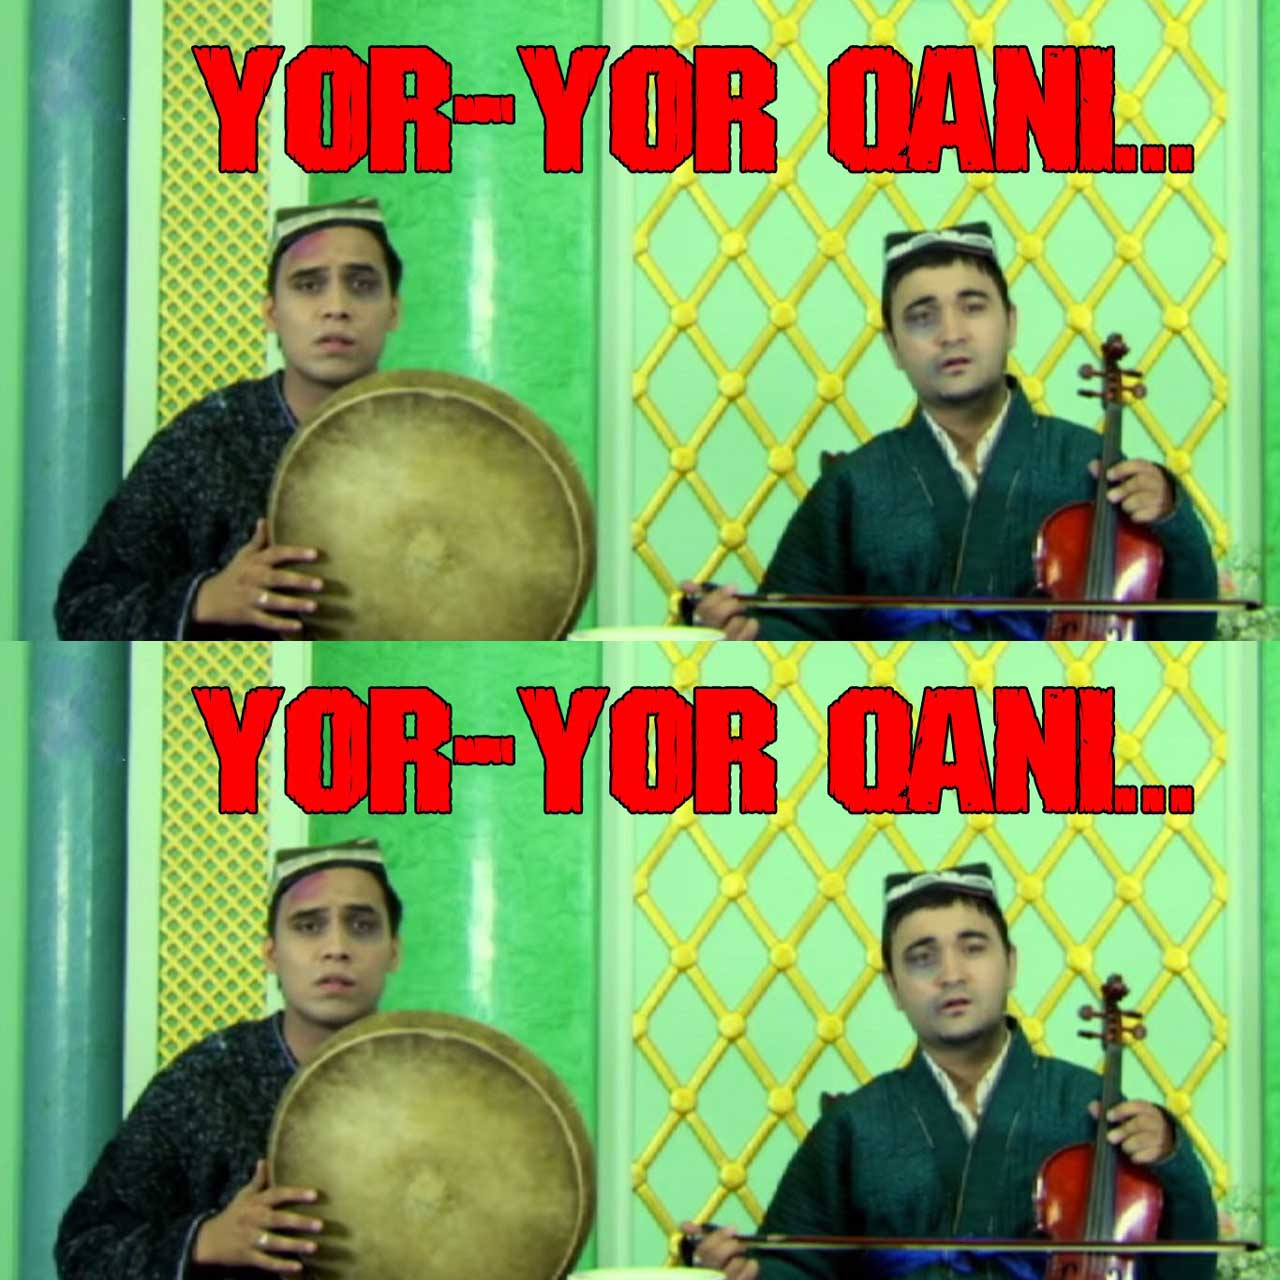 O'zbek Film 2016 Yor-yor qani смотреть онлайн